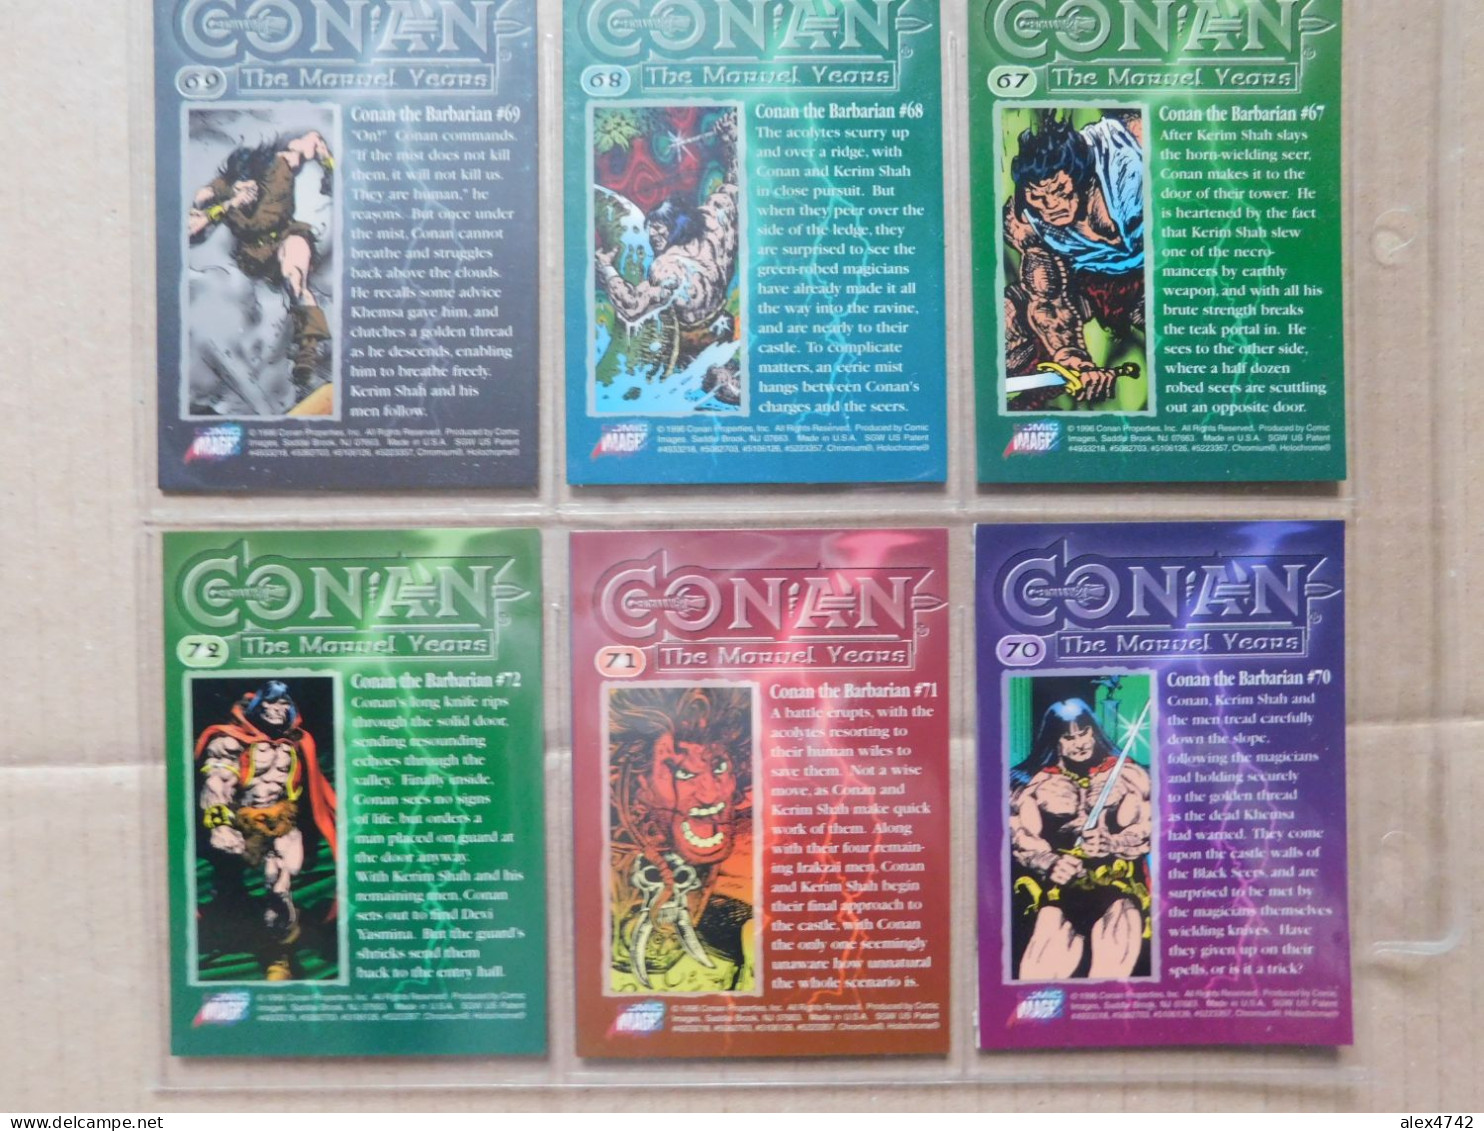 Marvel Comics Group, Conan the Barbarian, Collection complète de 90 cartes - 1996   (BOX 5)